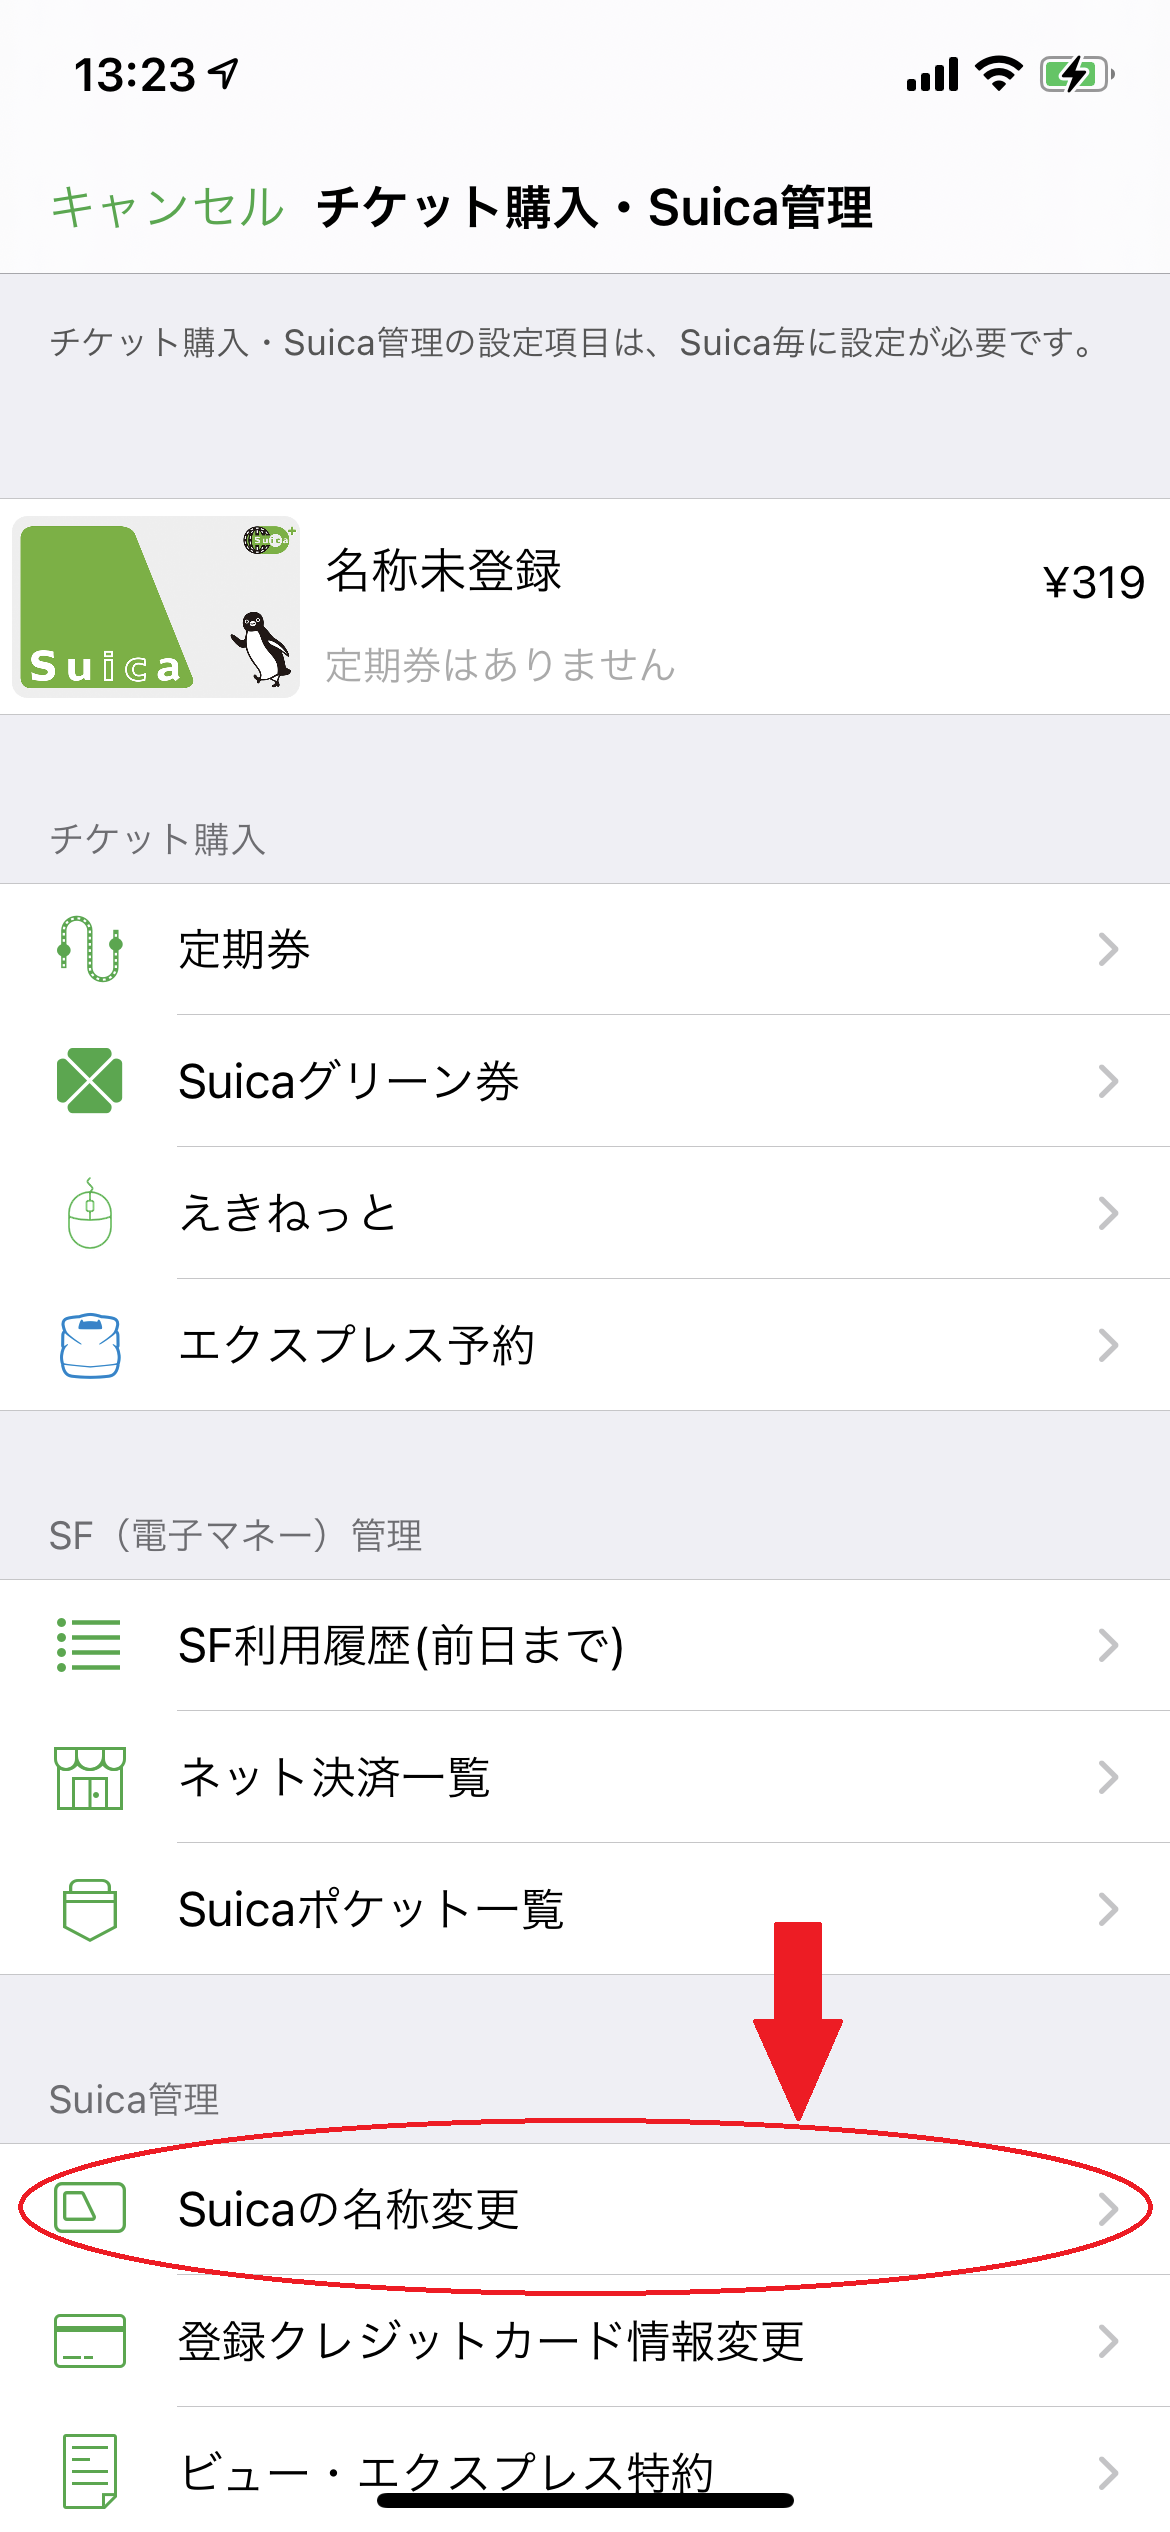 チケット購入・Suica管理画面のSuicaの名称変更の場所